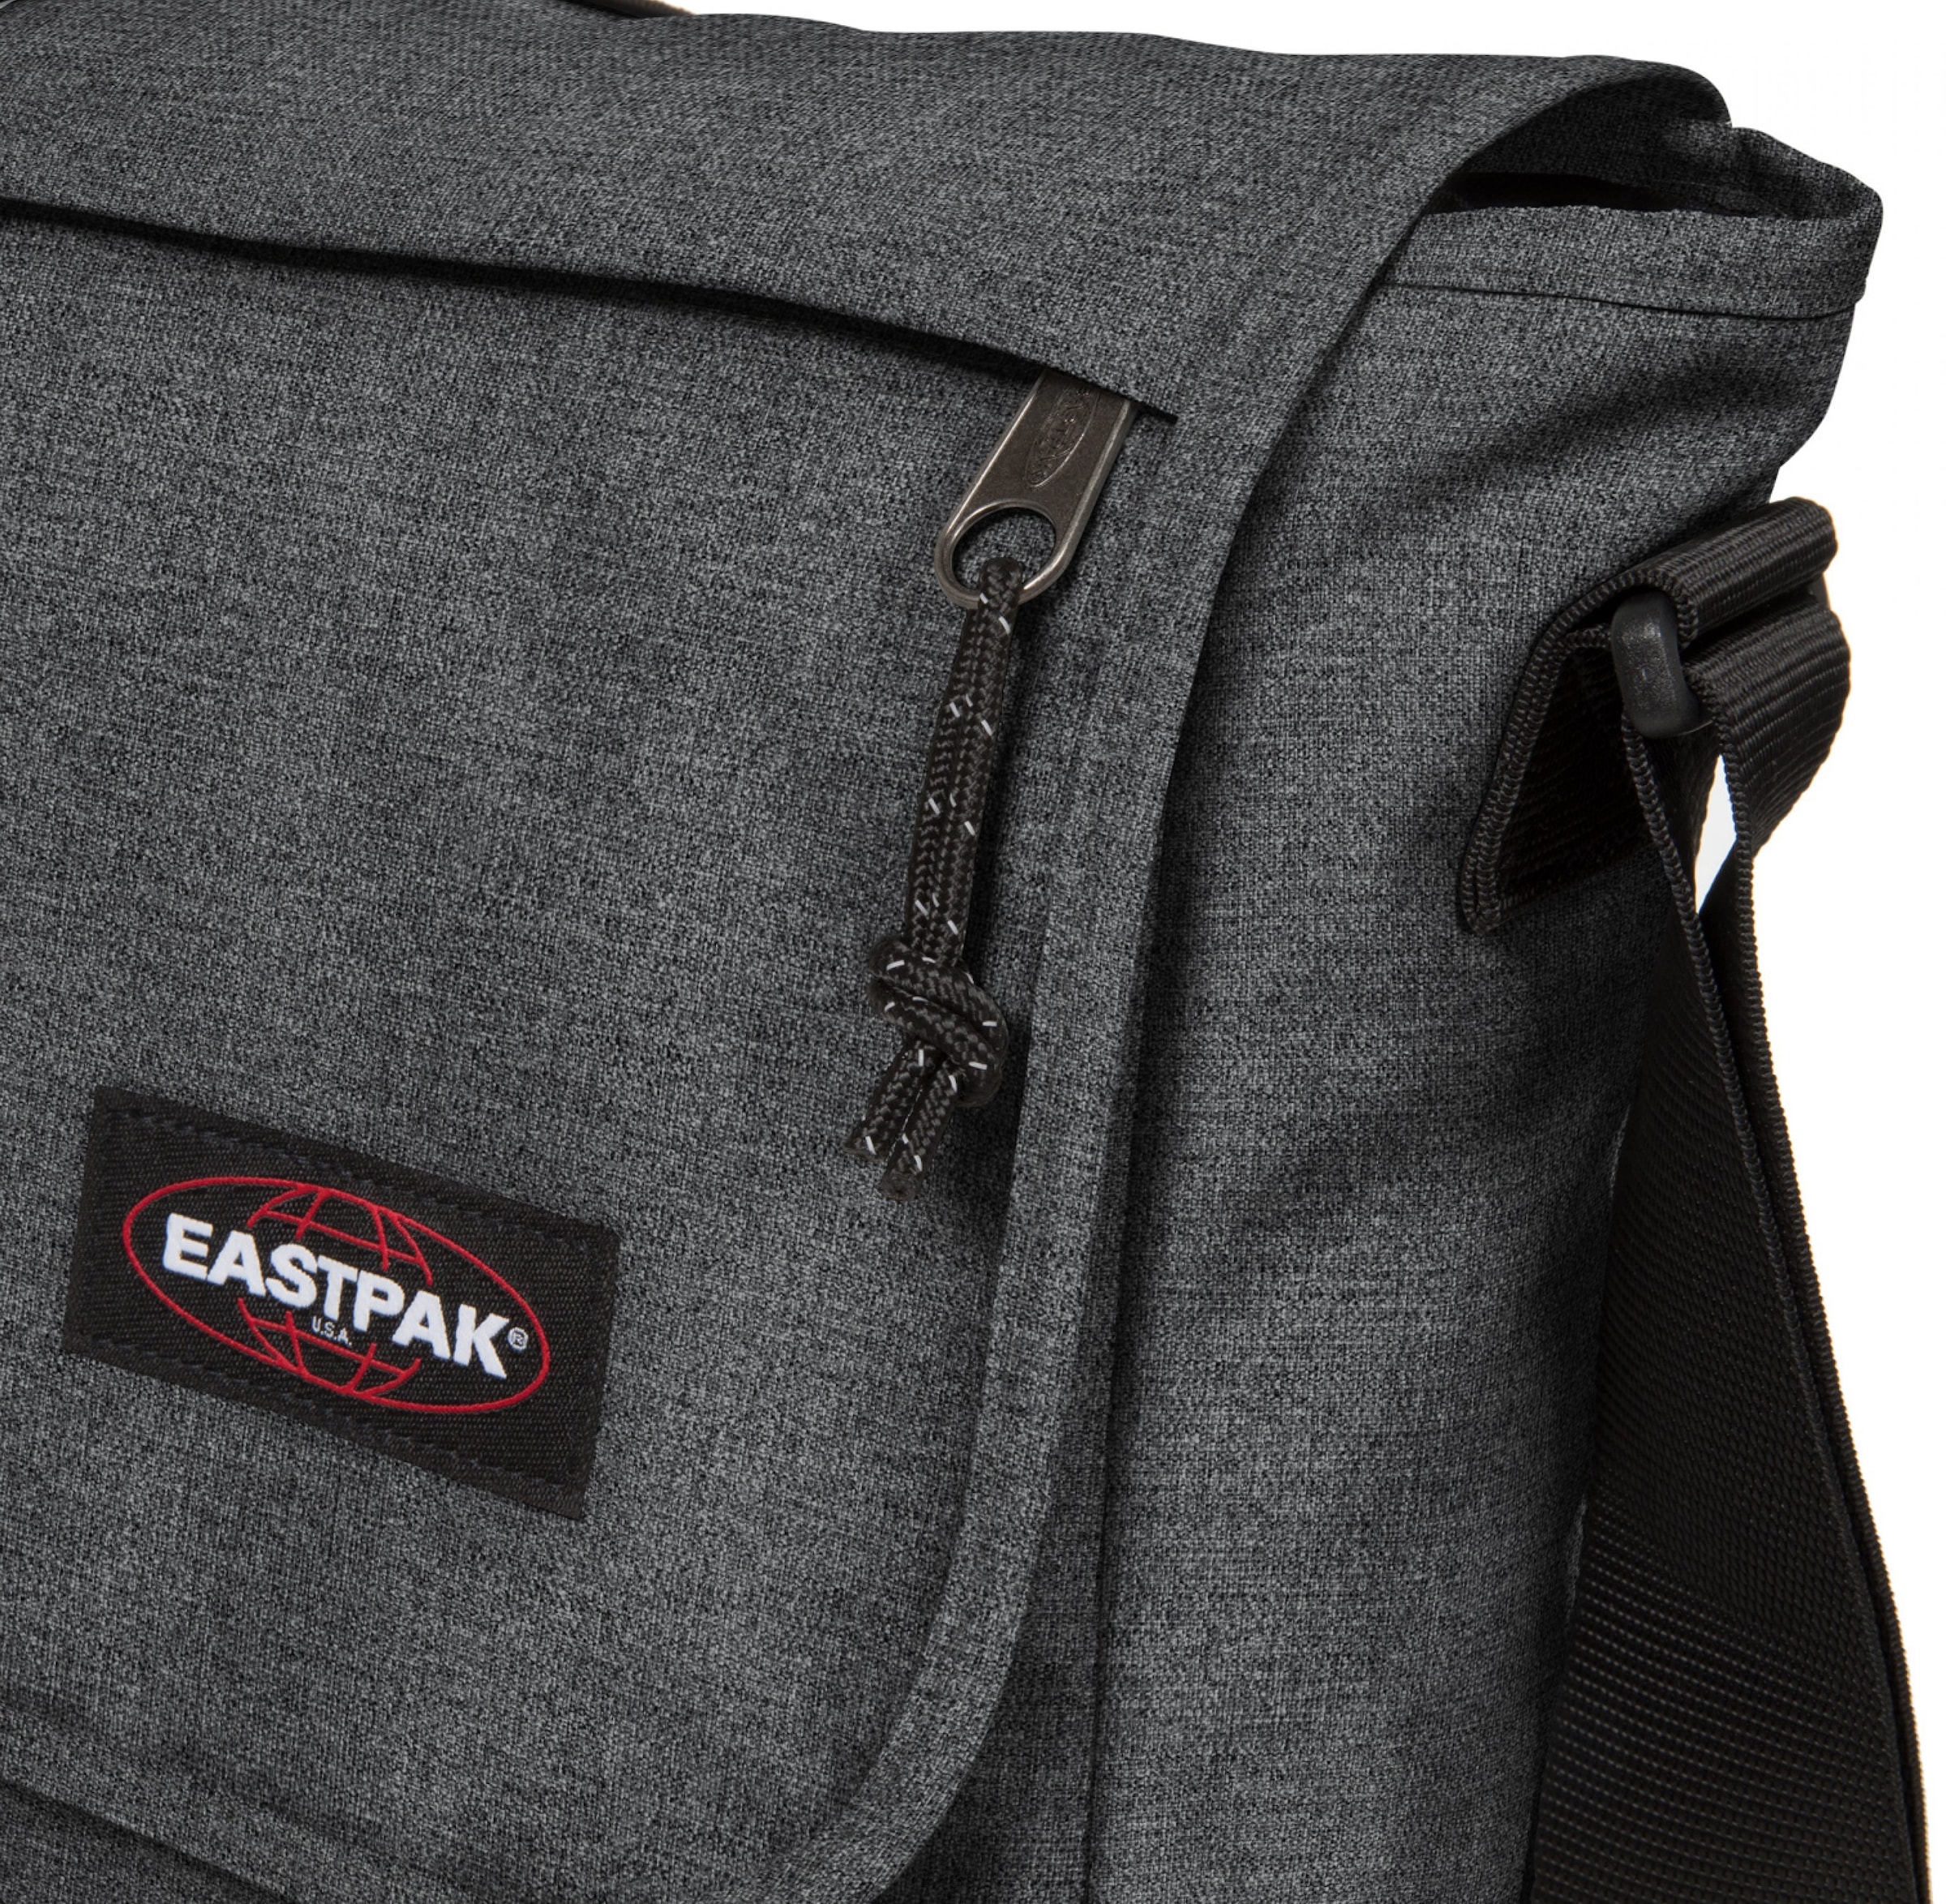 ♕ Eastpak im Bag versandkostenfrei praktischen +«, »Delegate Design auf Messenger